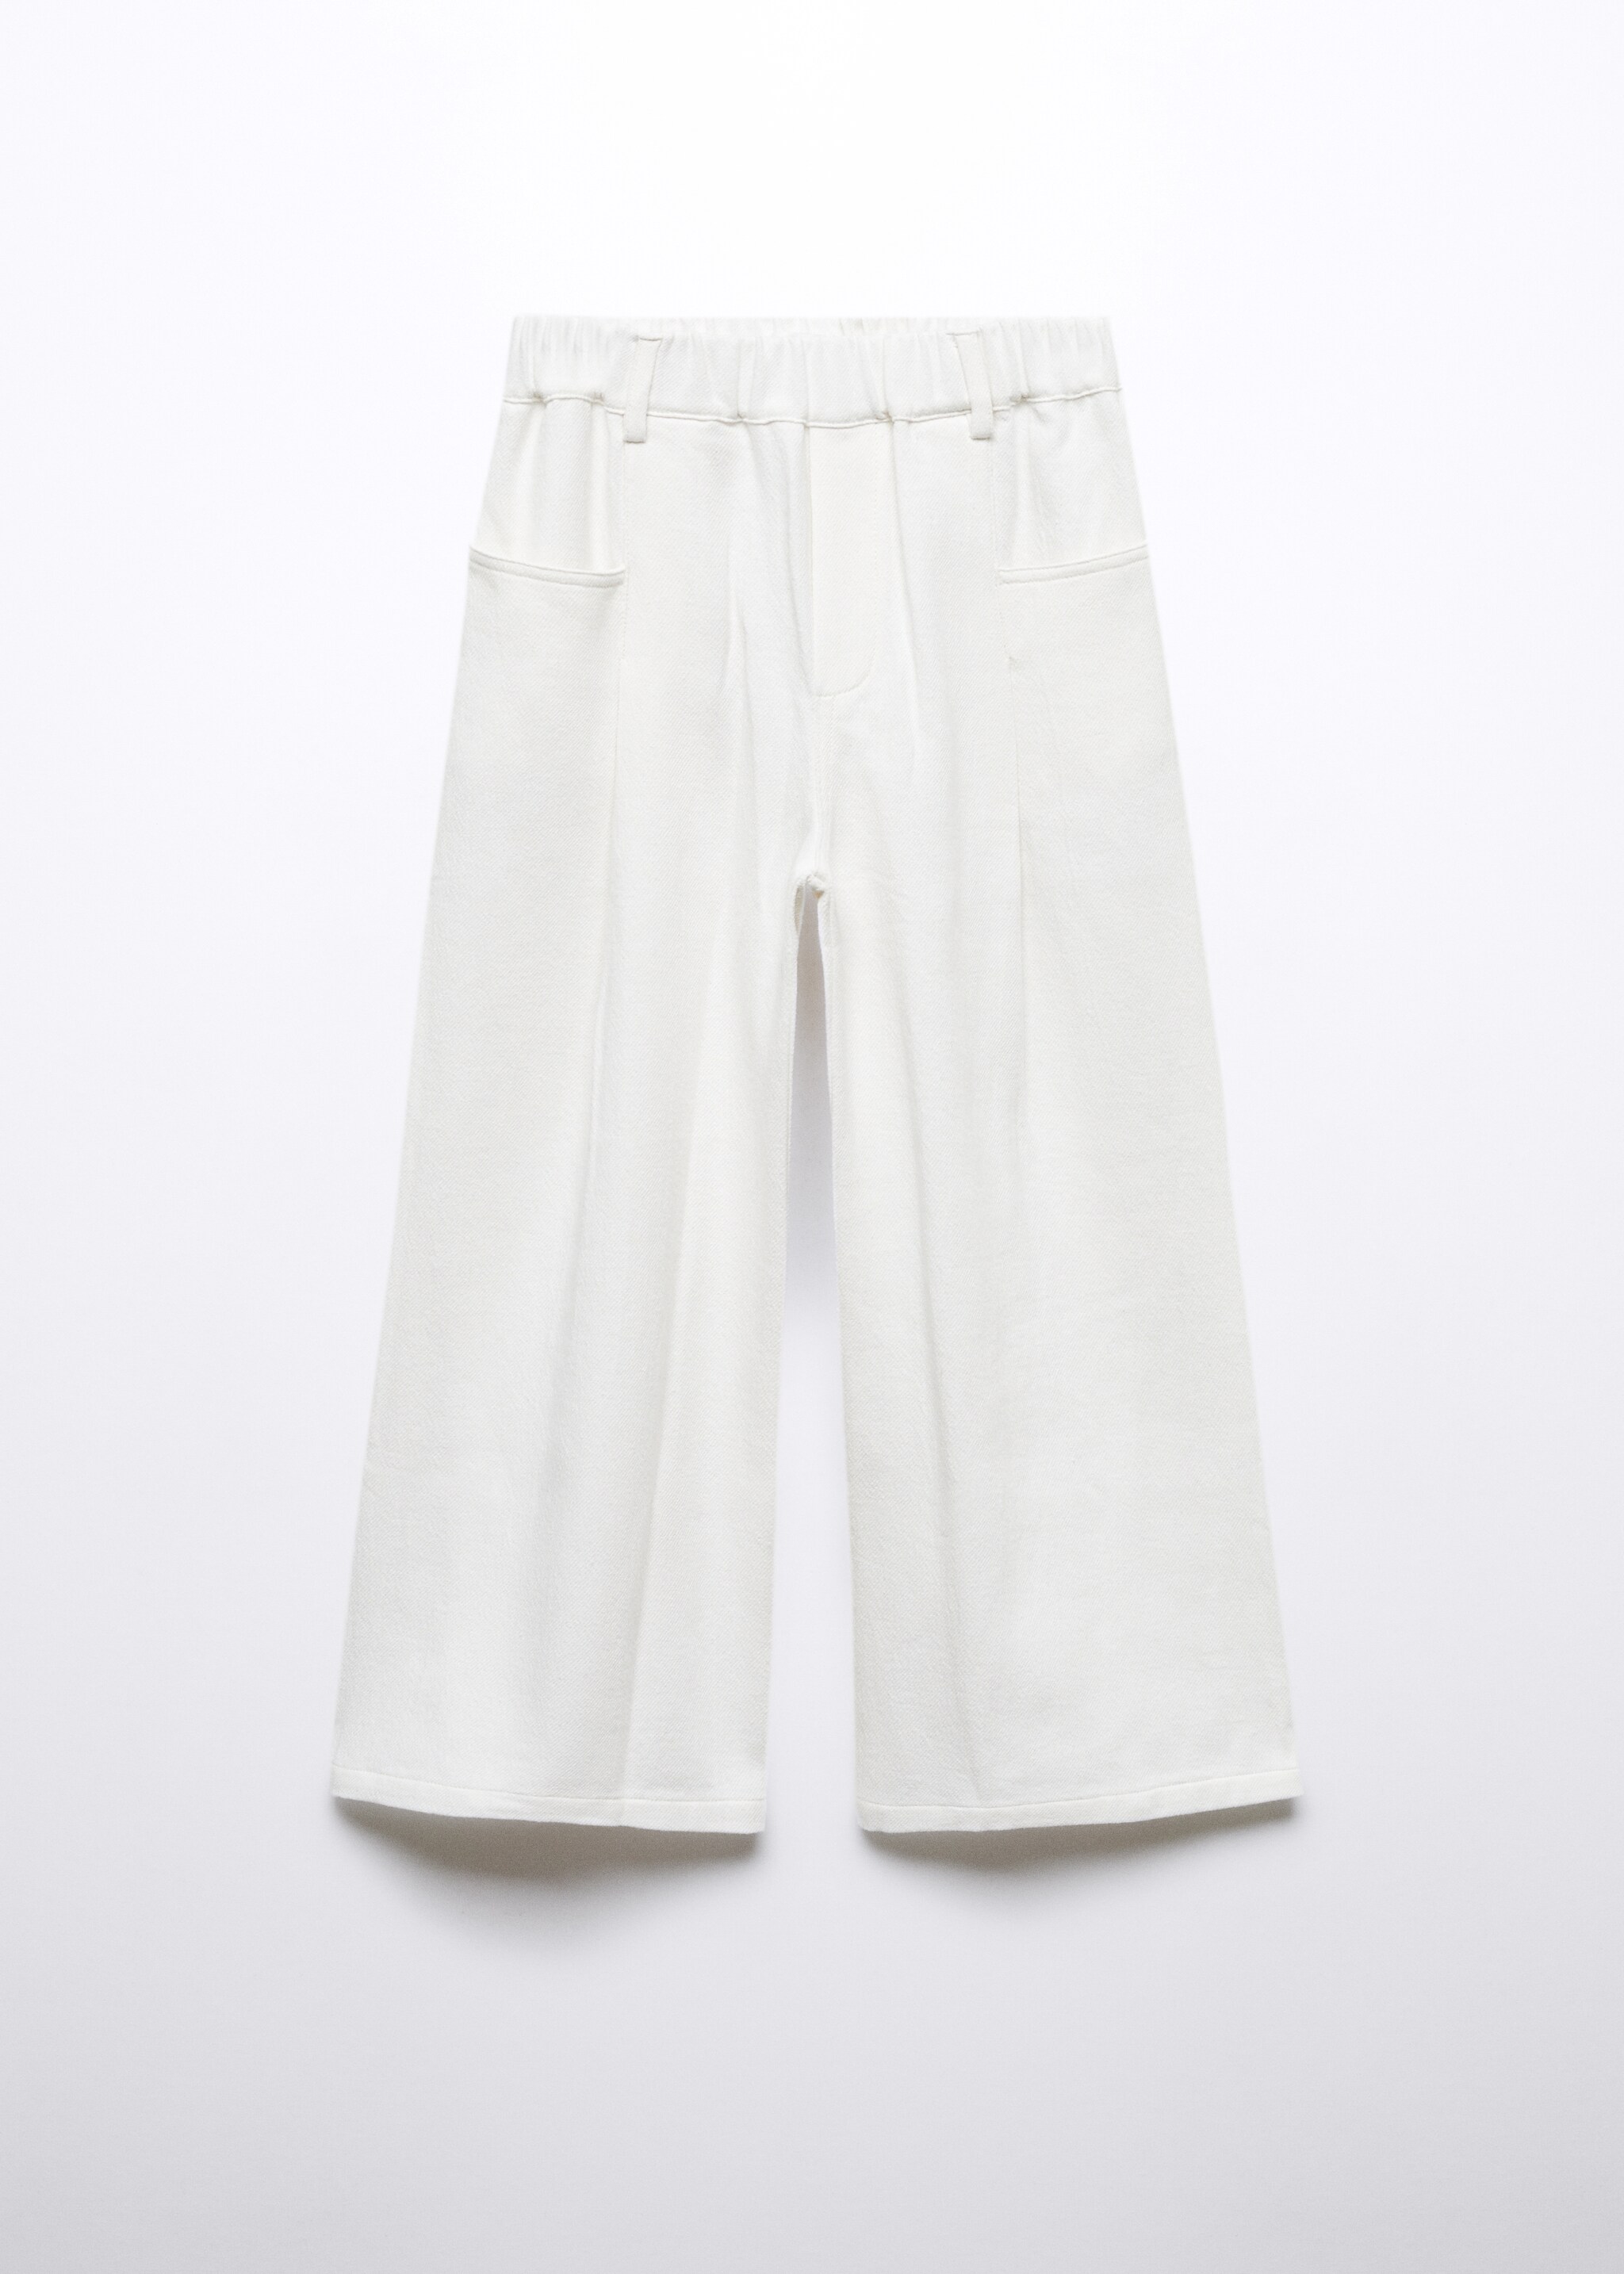 Pantaloni elasticizzati cotone - Articolo senza modello